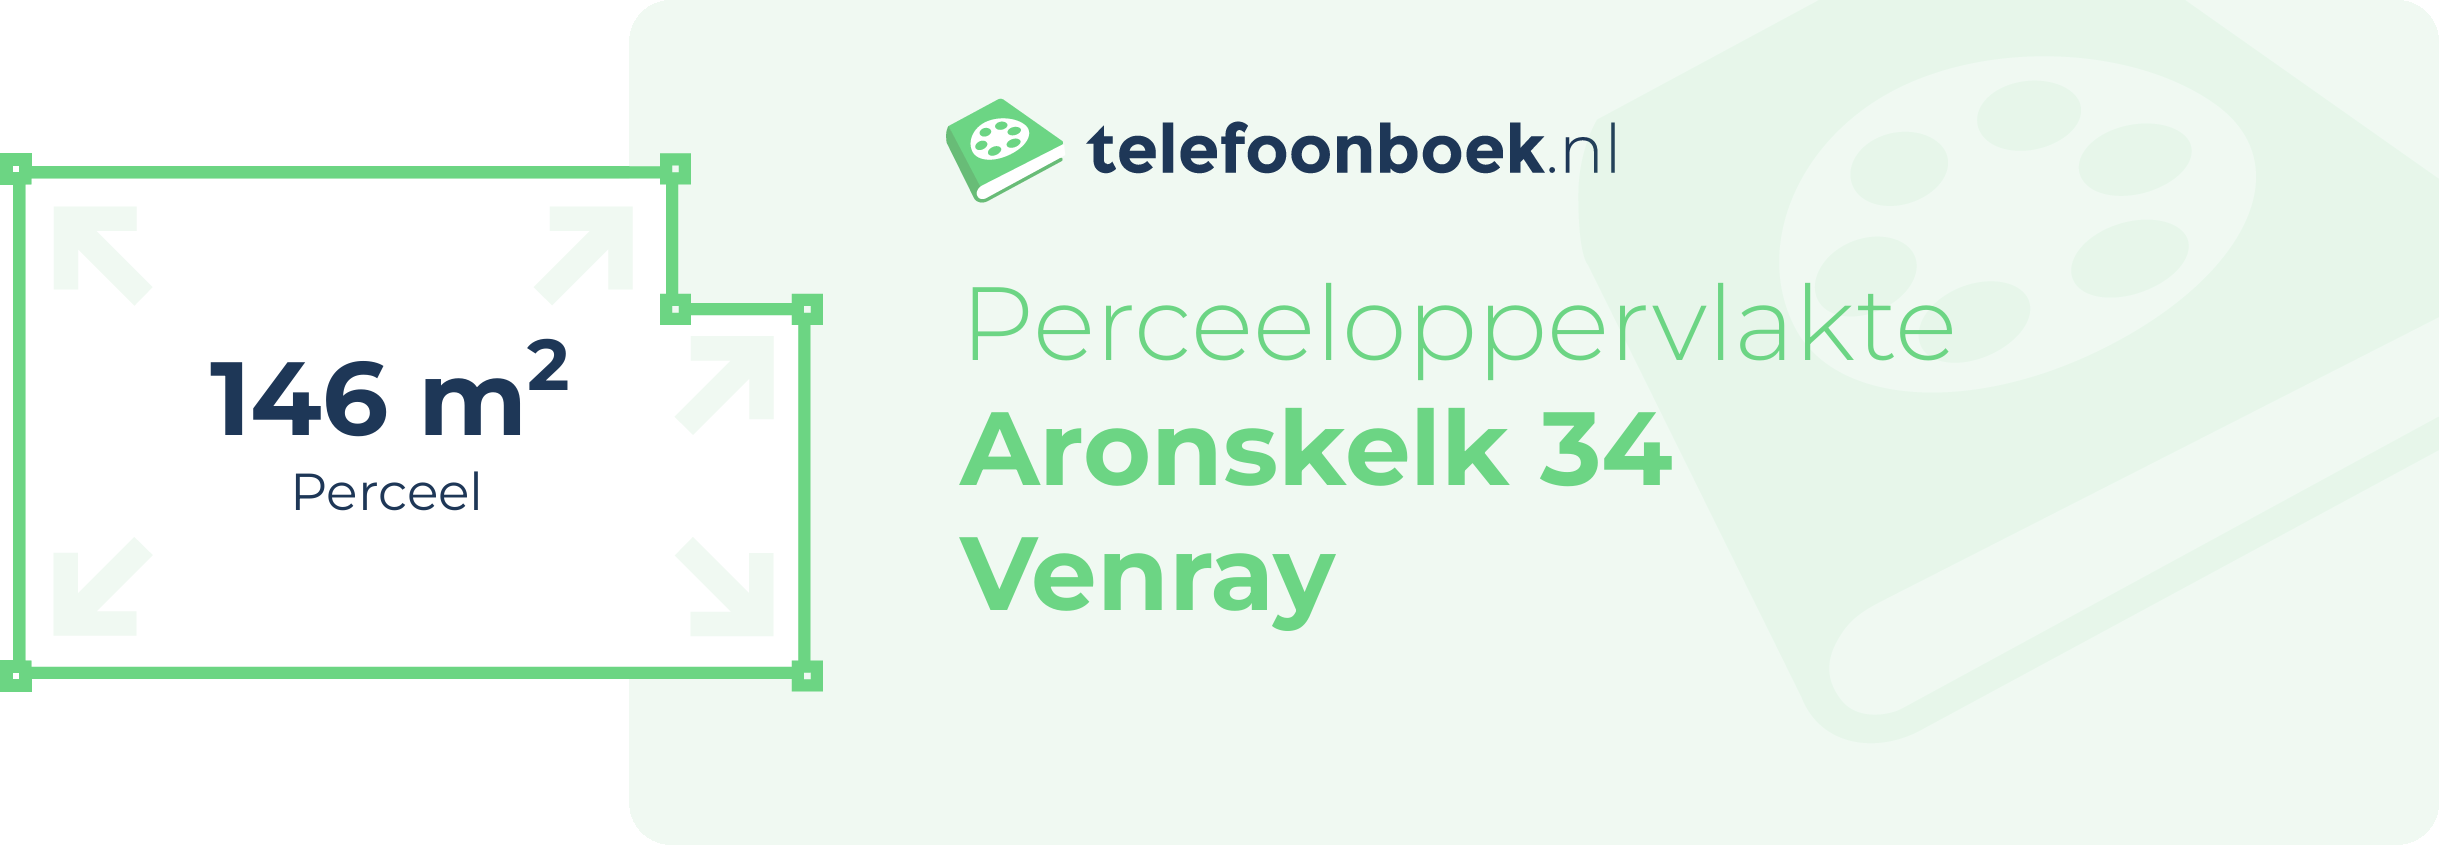 Perceeloppervlakte Aronskelk 34 Venray